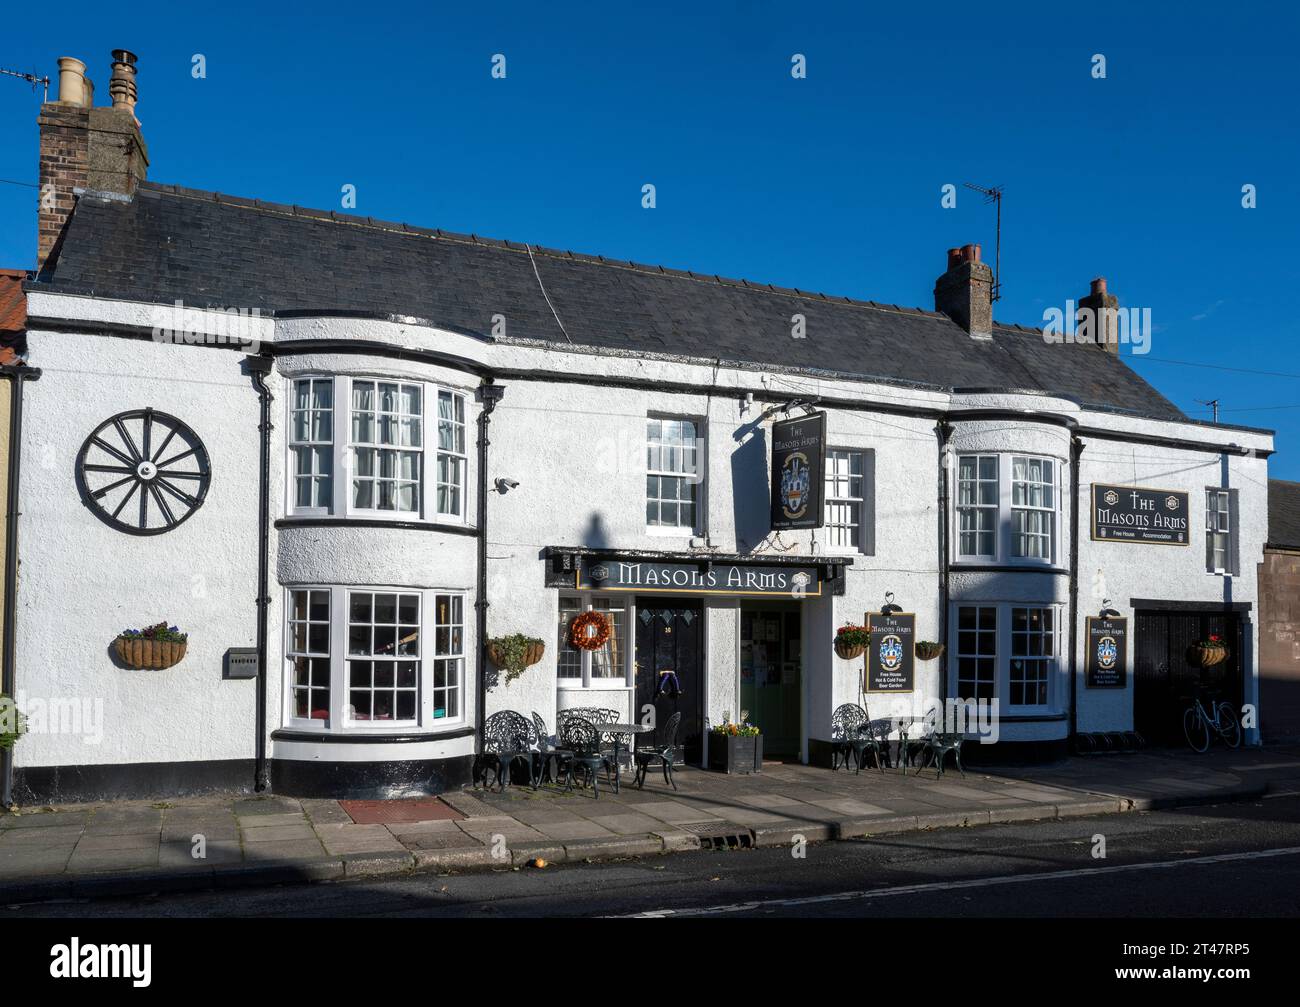 The Masons Arms public house, West Street, Norham, Berwick-upon-Tweed, Northumberland, England, UK Stock Photo